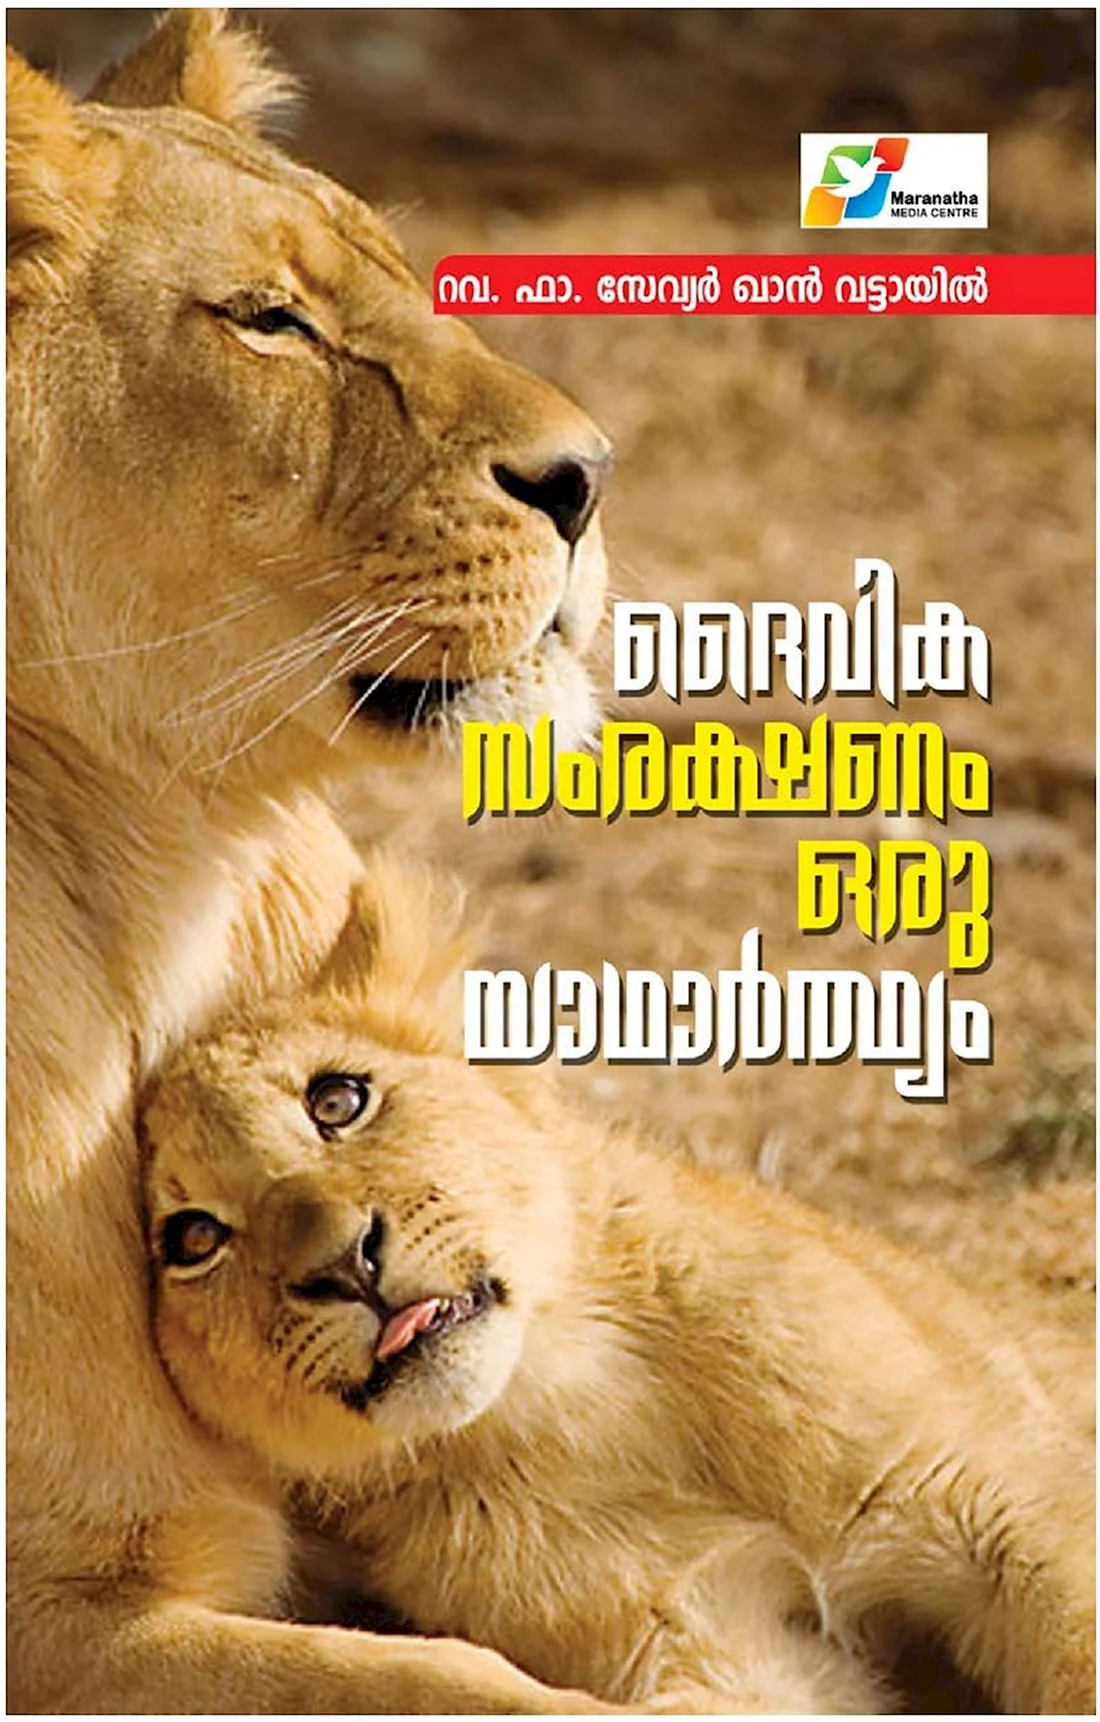 Лев и львица с надписями